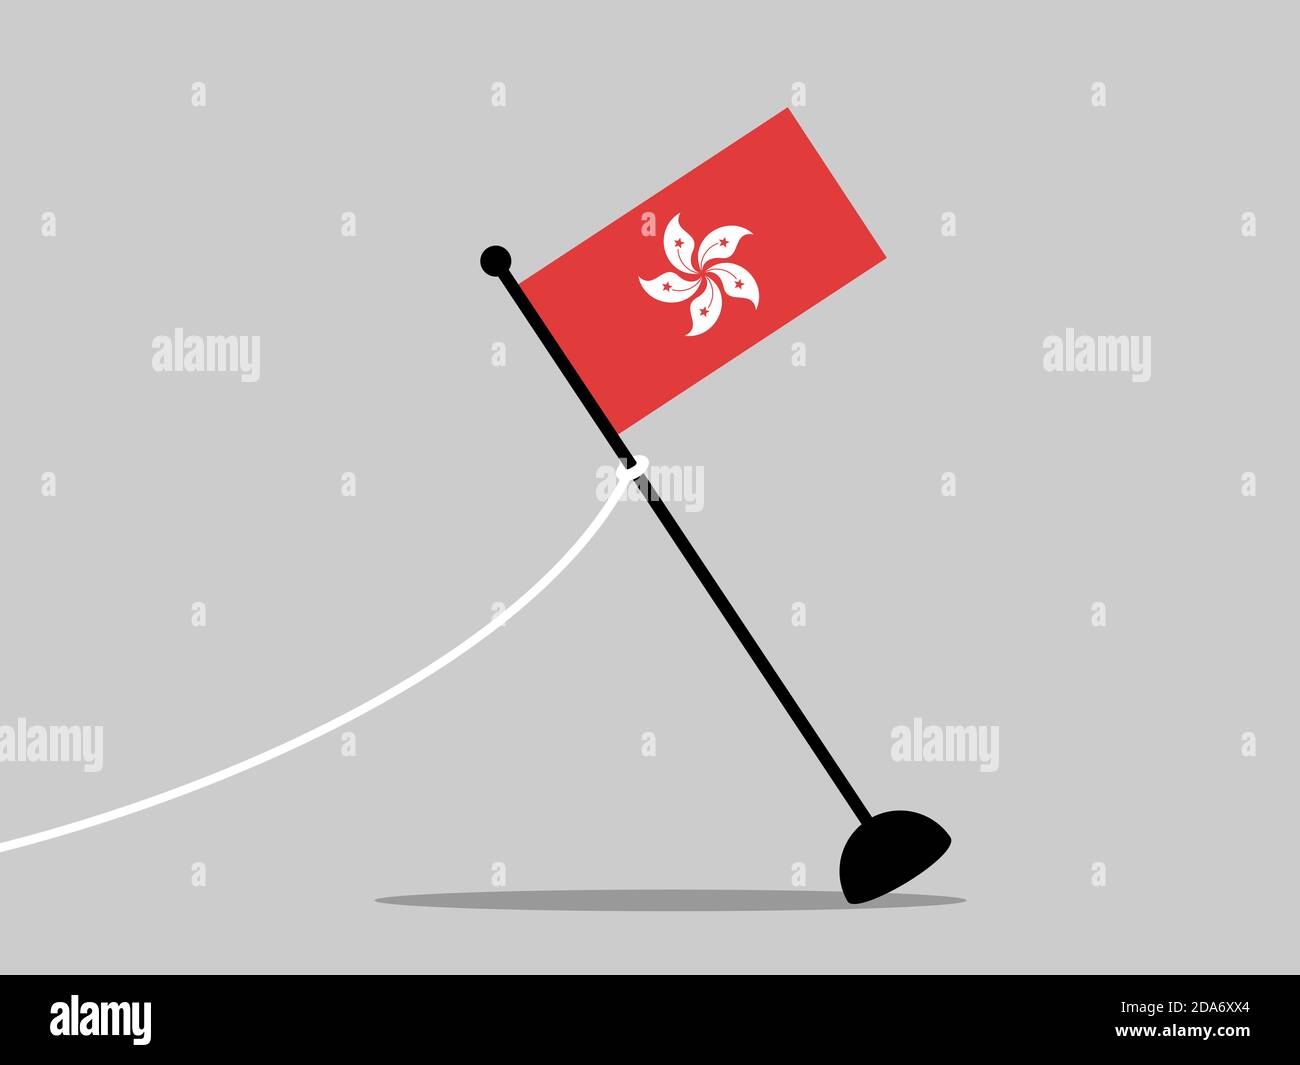 La bandera de Hongkong / Hong Kong se ha eliminado. Fin del país, estado y área autónoma. Ilustración vectorial. Foto de stock